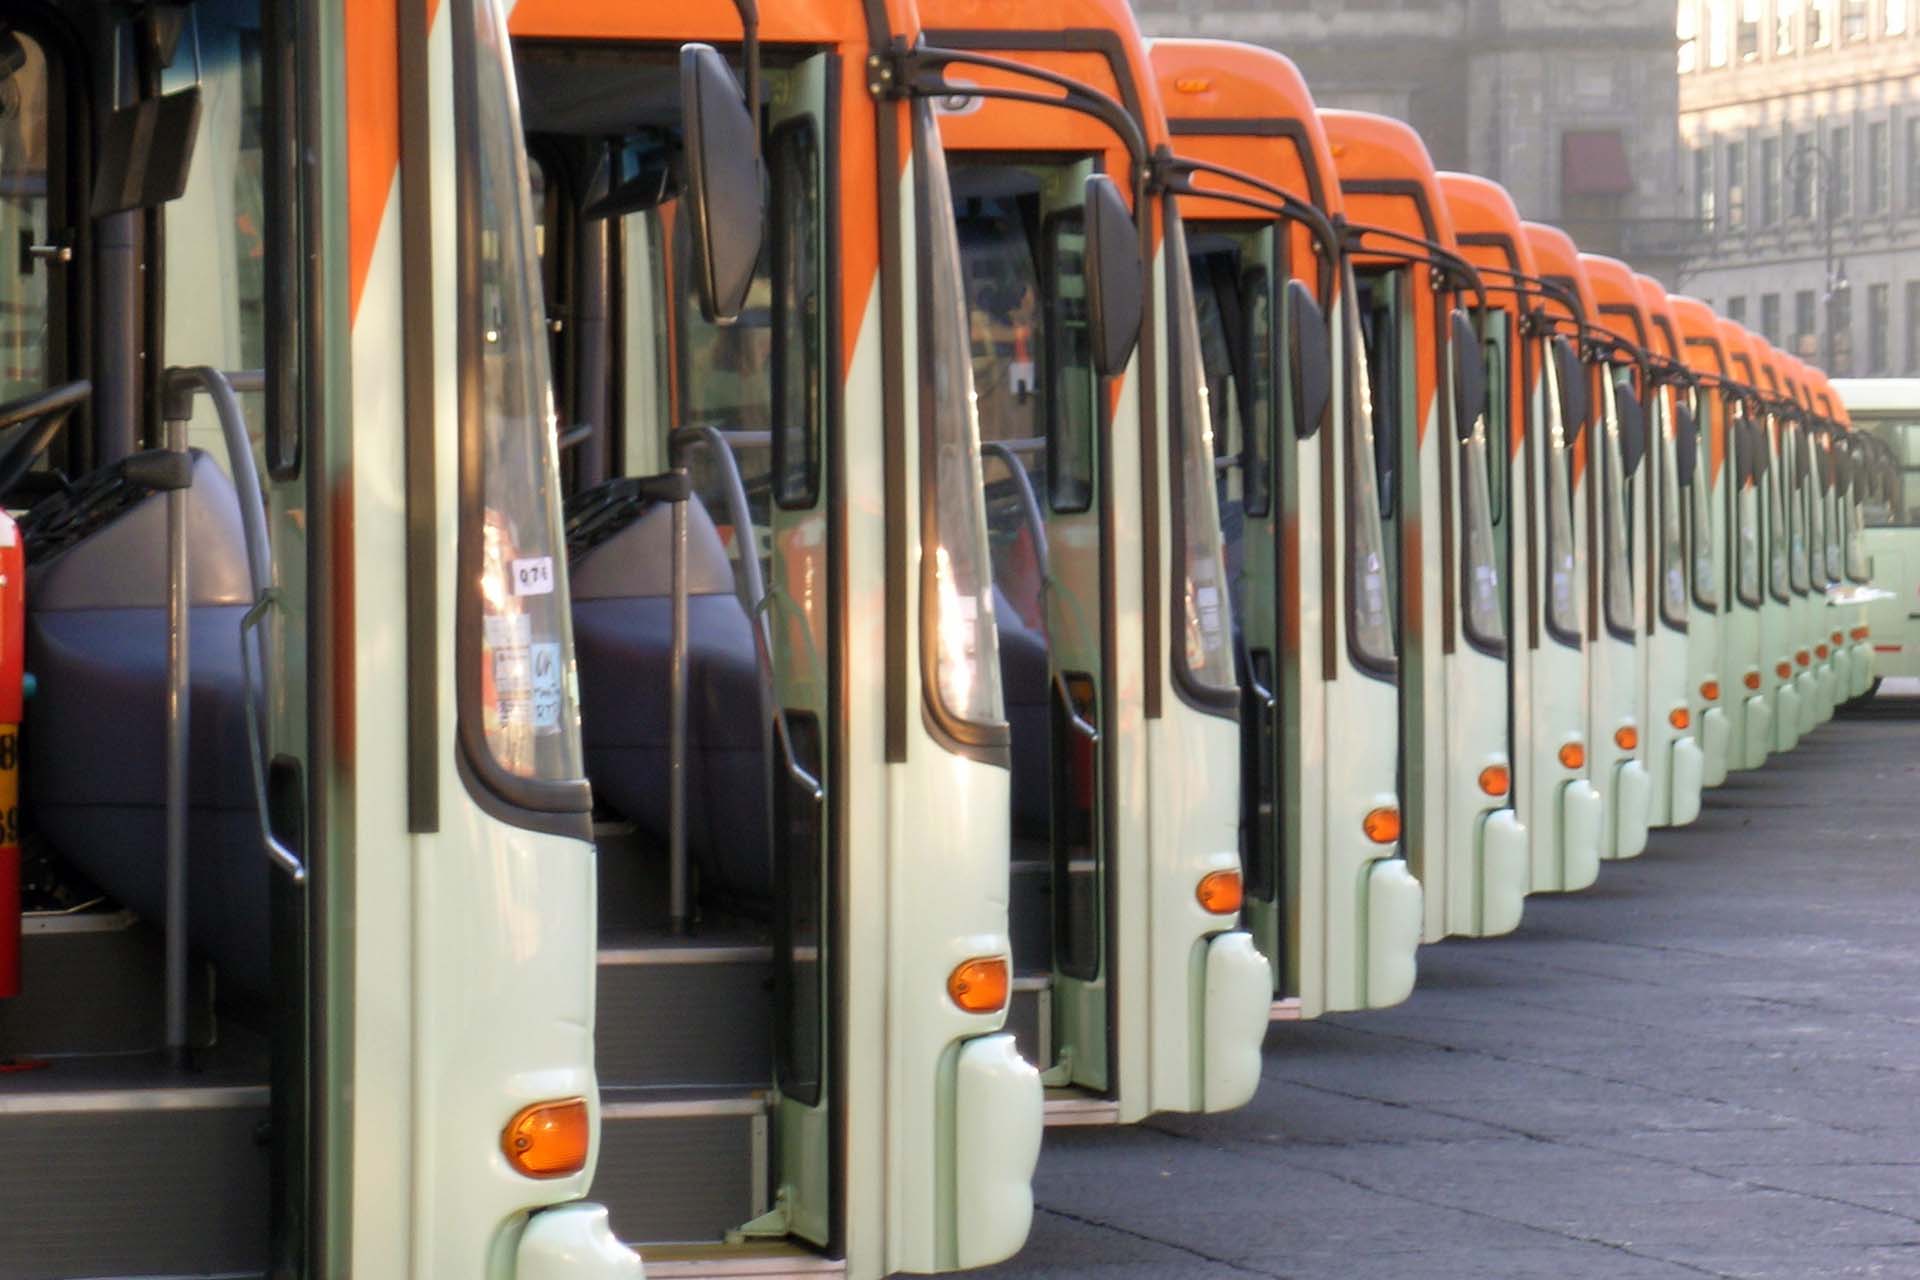 Los autobuses liberan menos dióxido de carbono en comparación a los automóviles ya que fueron adquiridos con ese fin